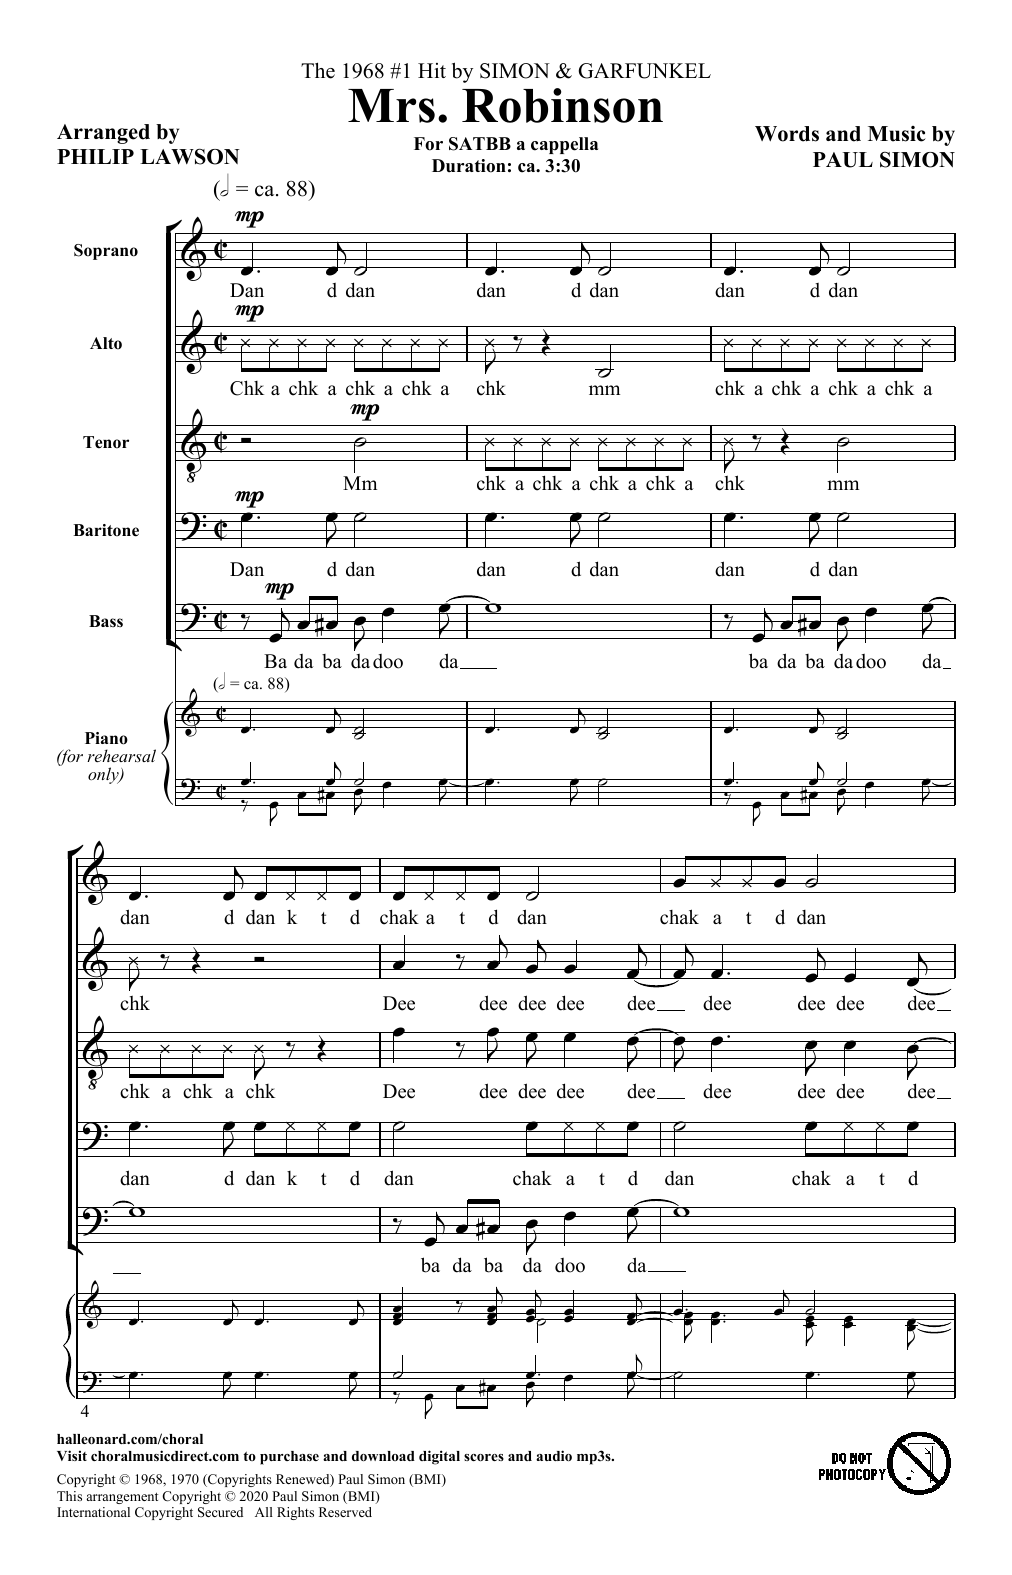 Simon & Garfunkel Mrs. Robinson (arr. Philip Lawson) Sheet Music Notes & Chords for SATB Choir - Download or Print PDF